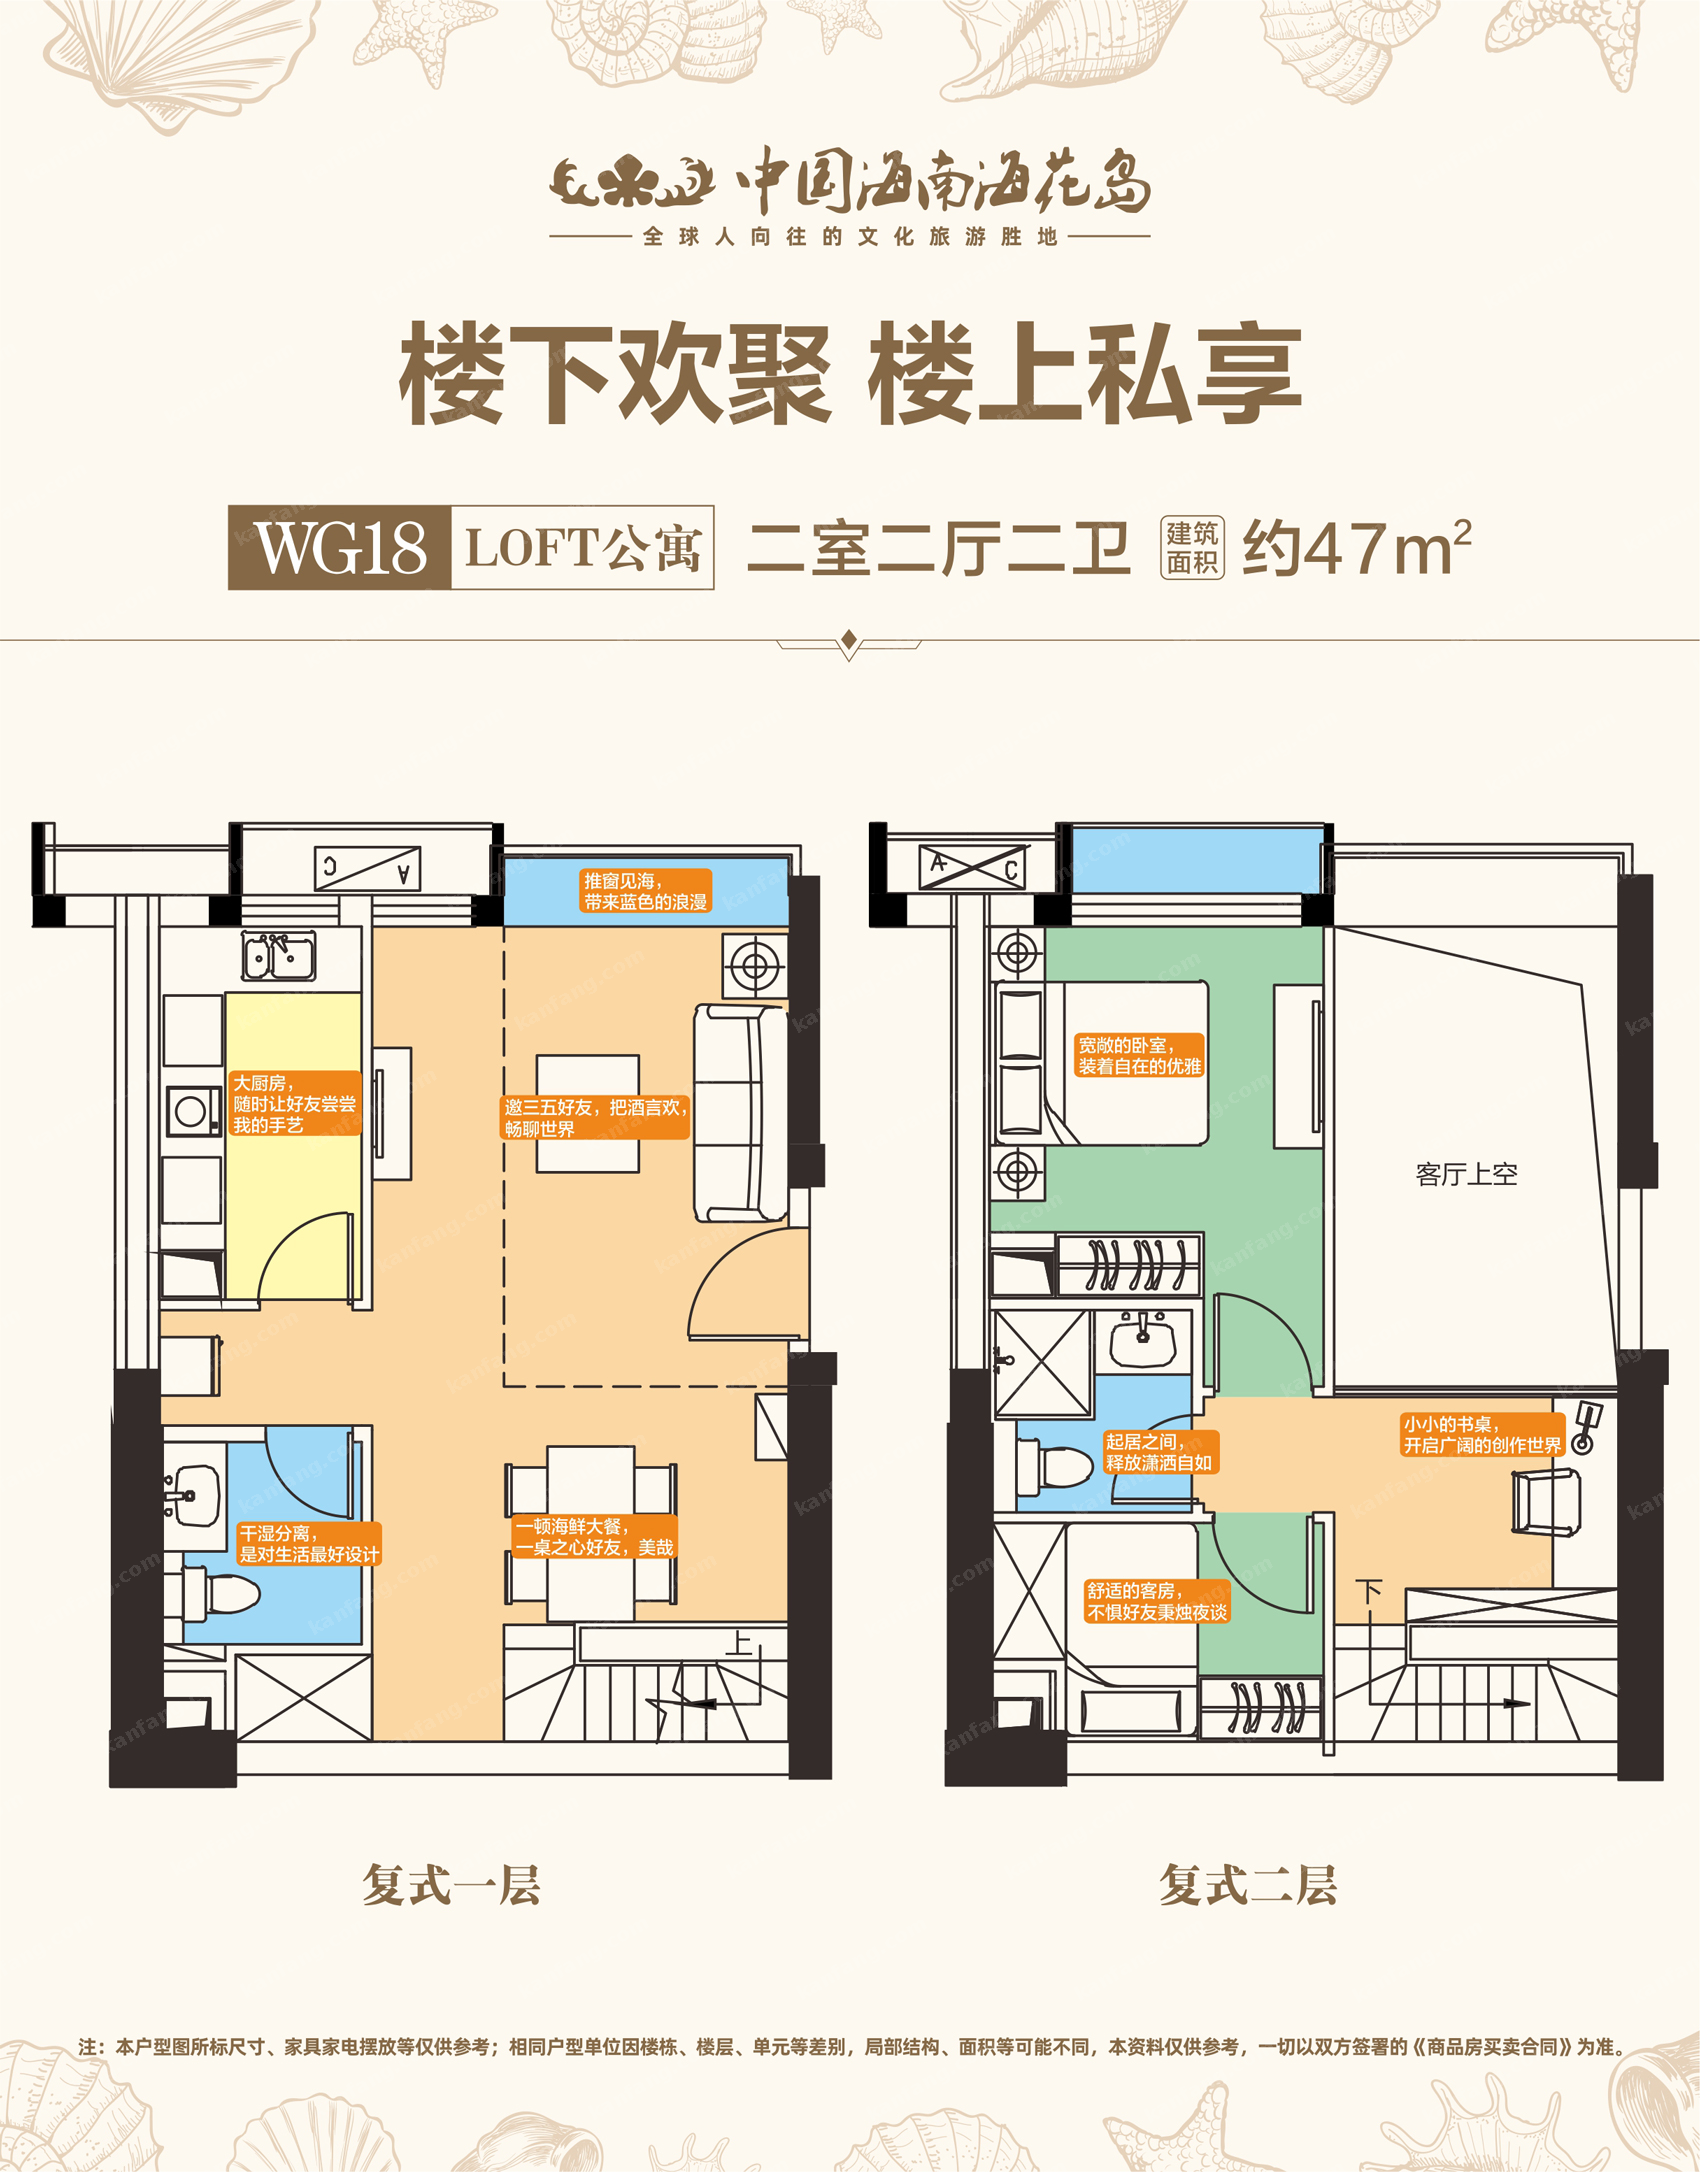 GW18loft公寓